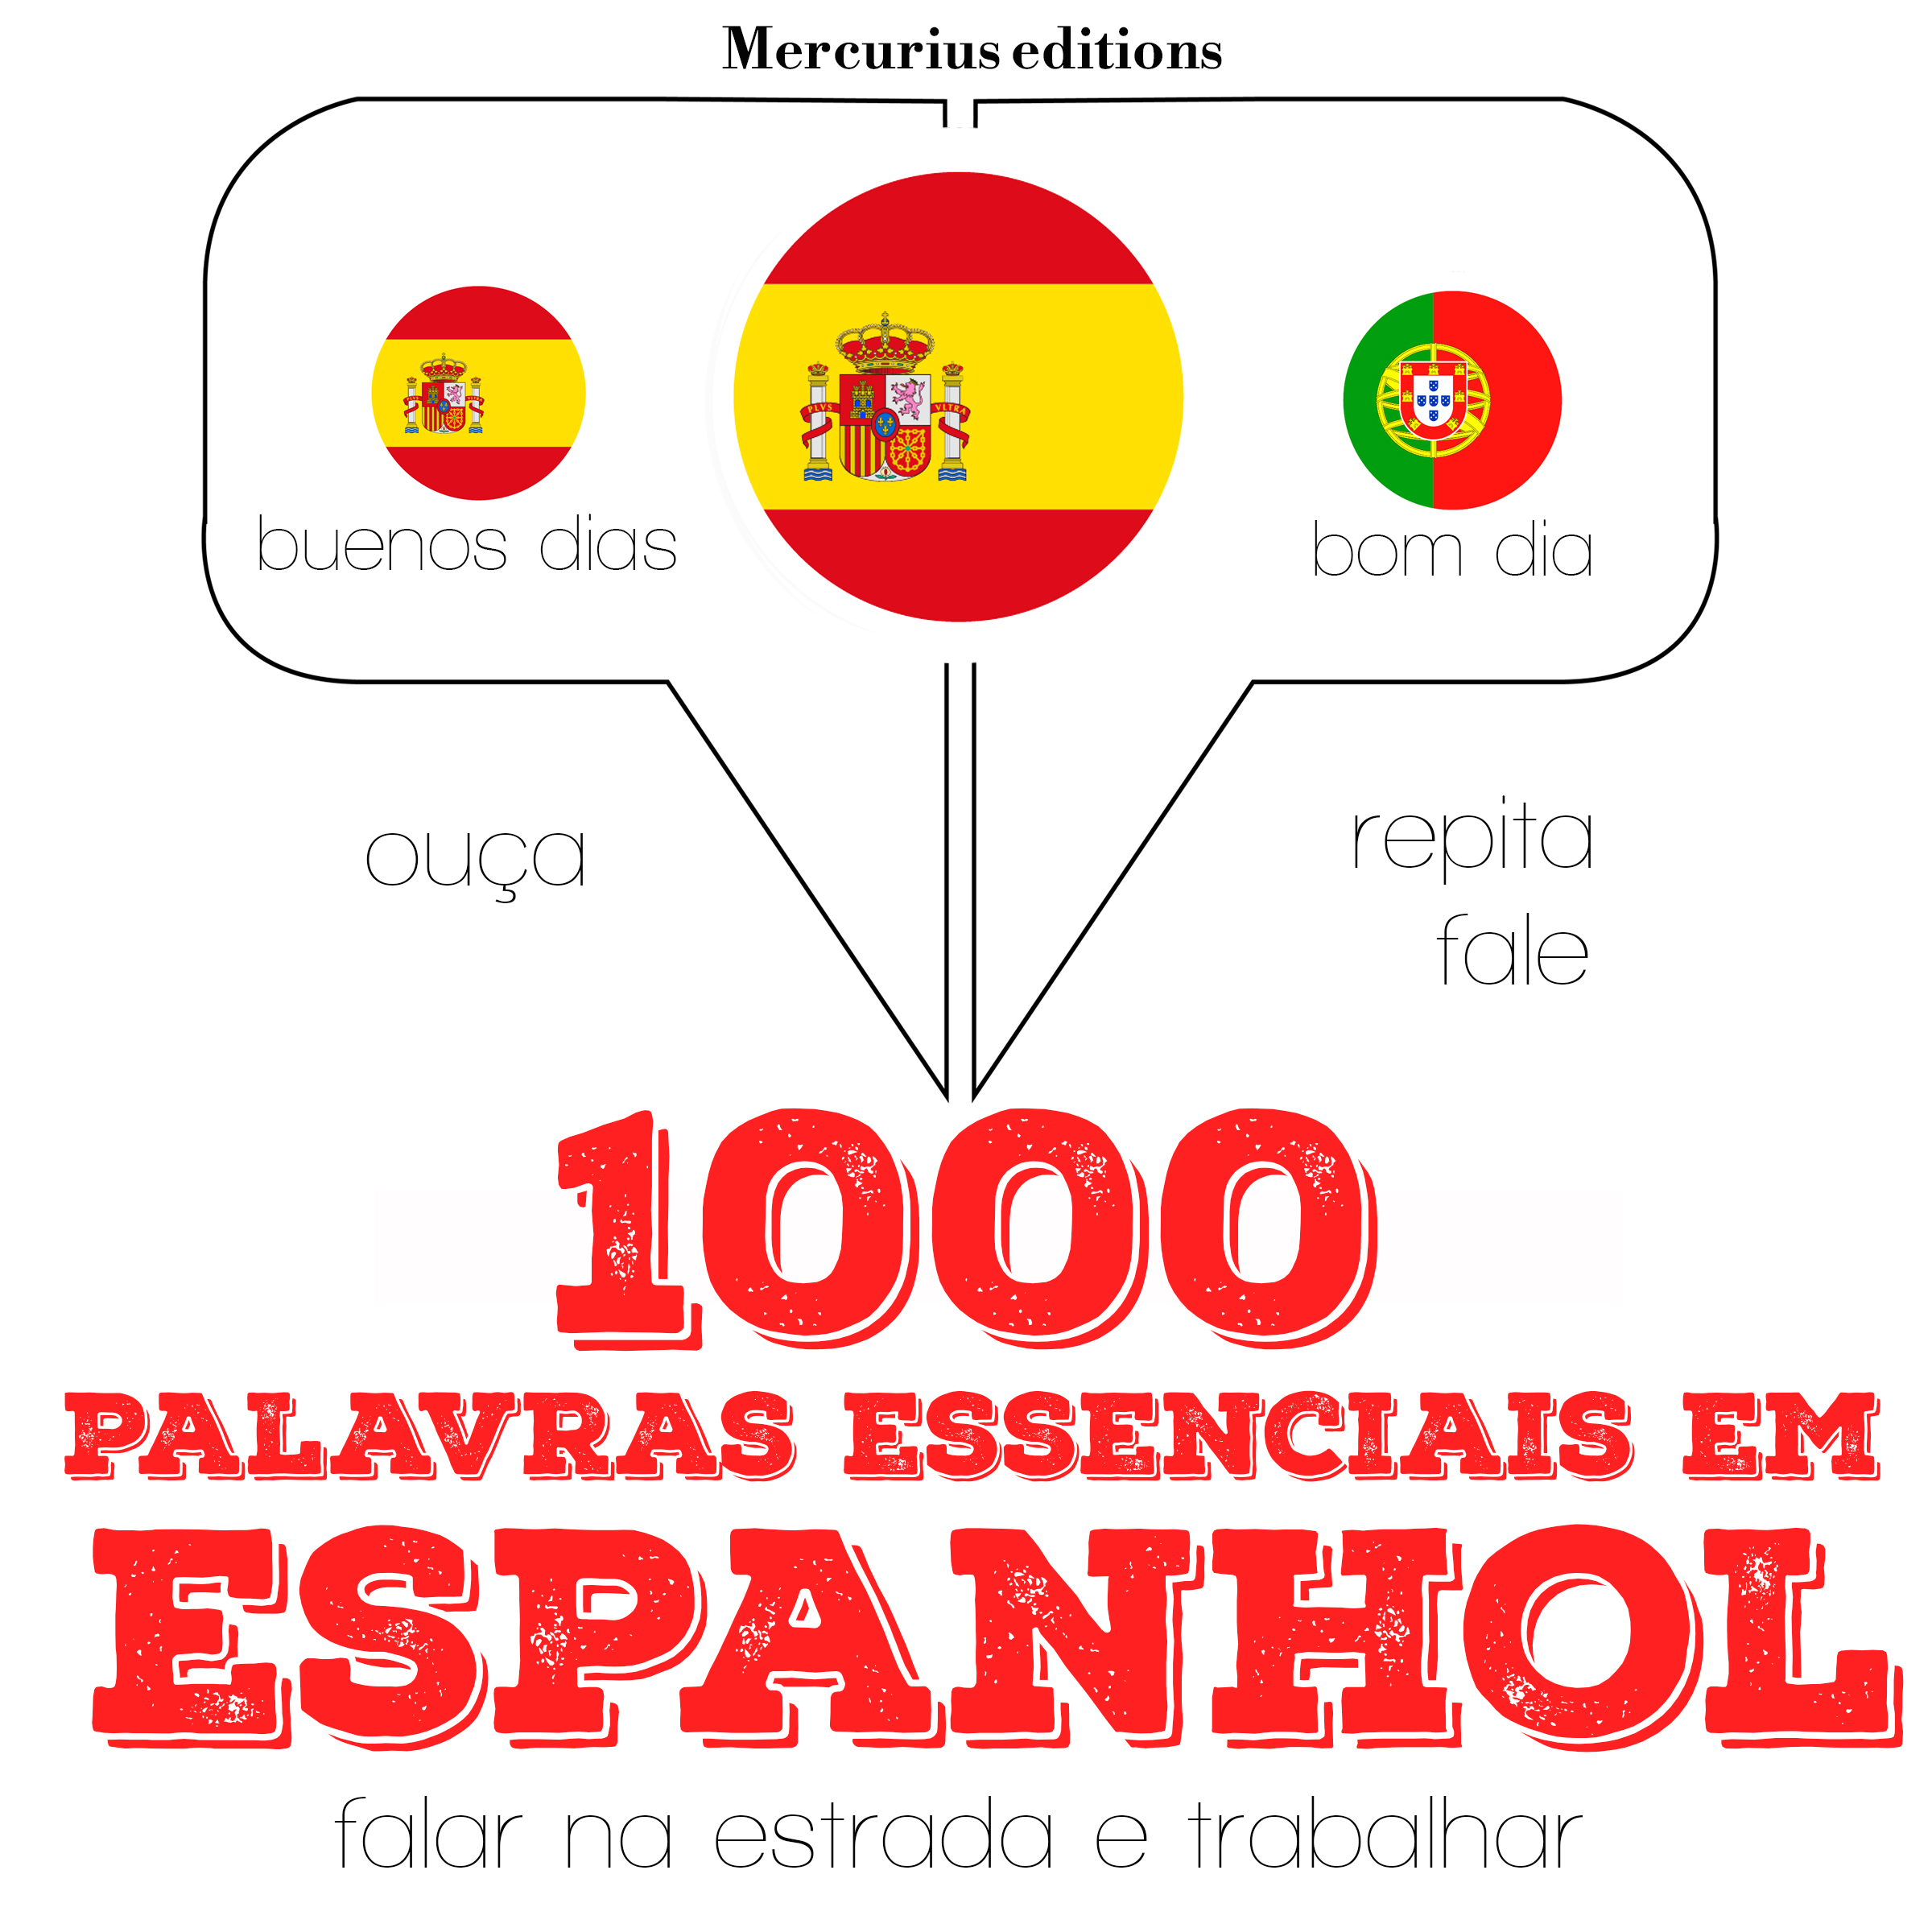 1000 palavras essenciais em espanhol | Mercurius Editions